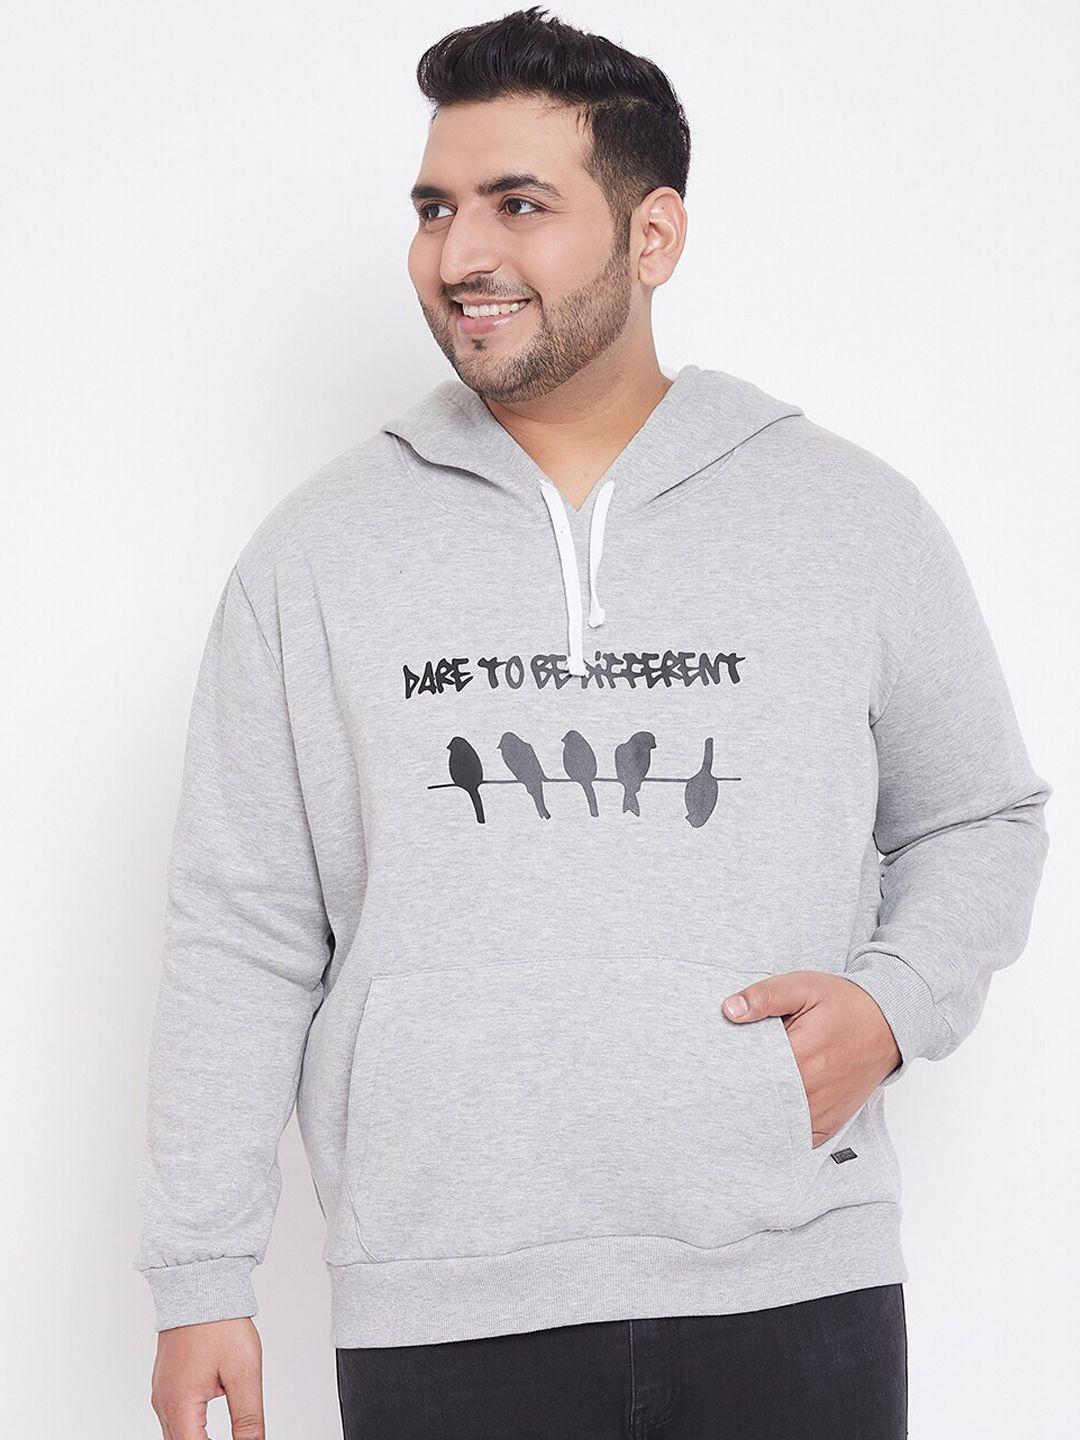 instafab-plus-men-grey-typography-printed-hooded-sweatshirt